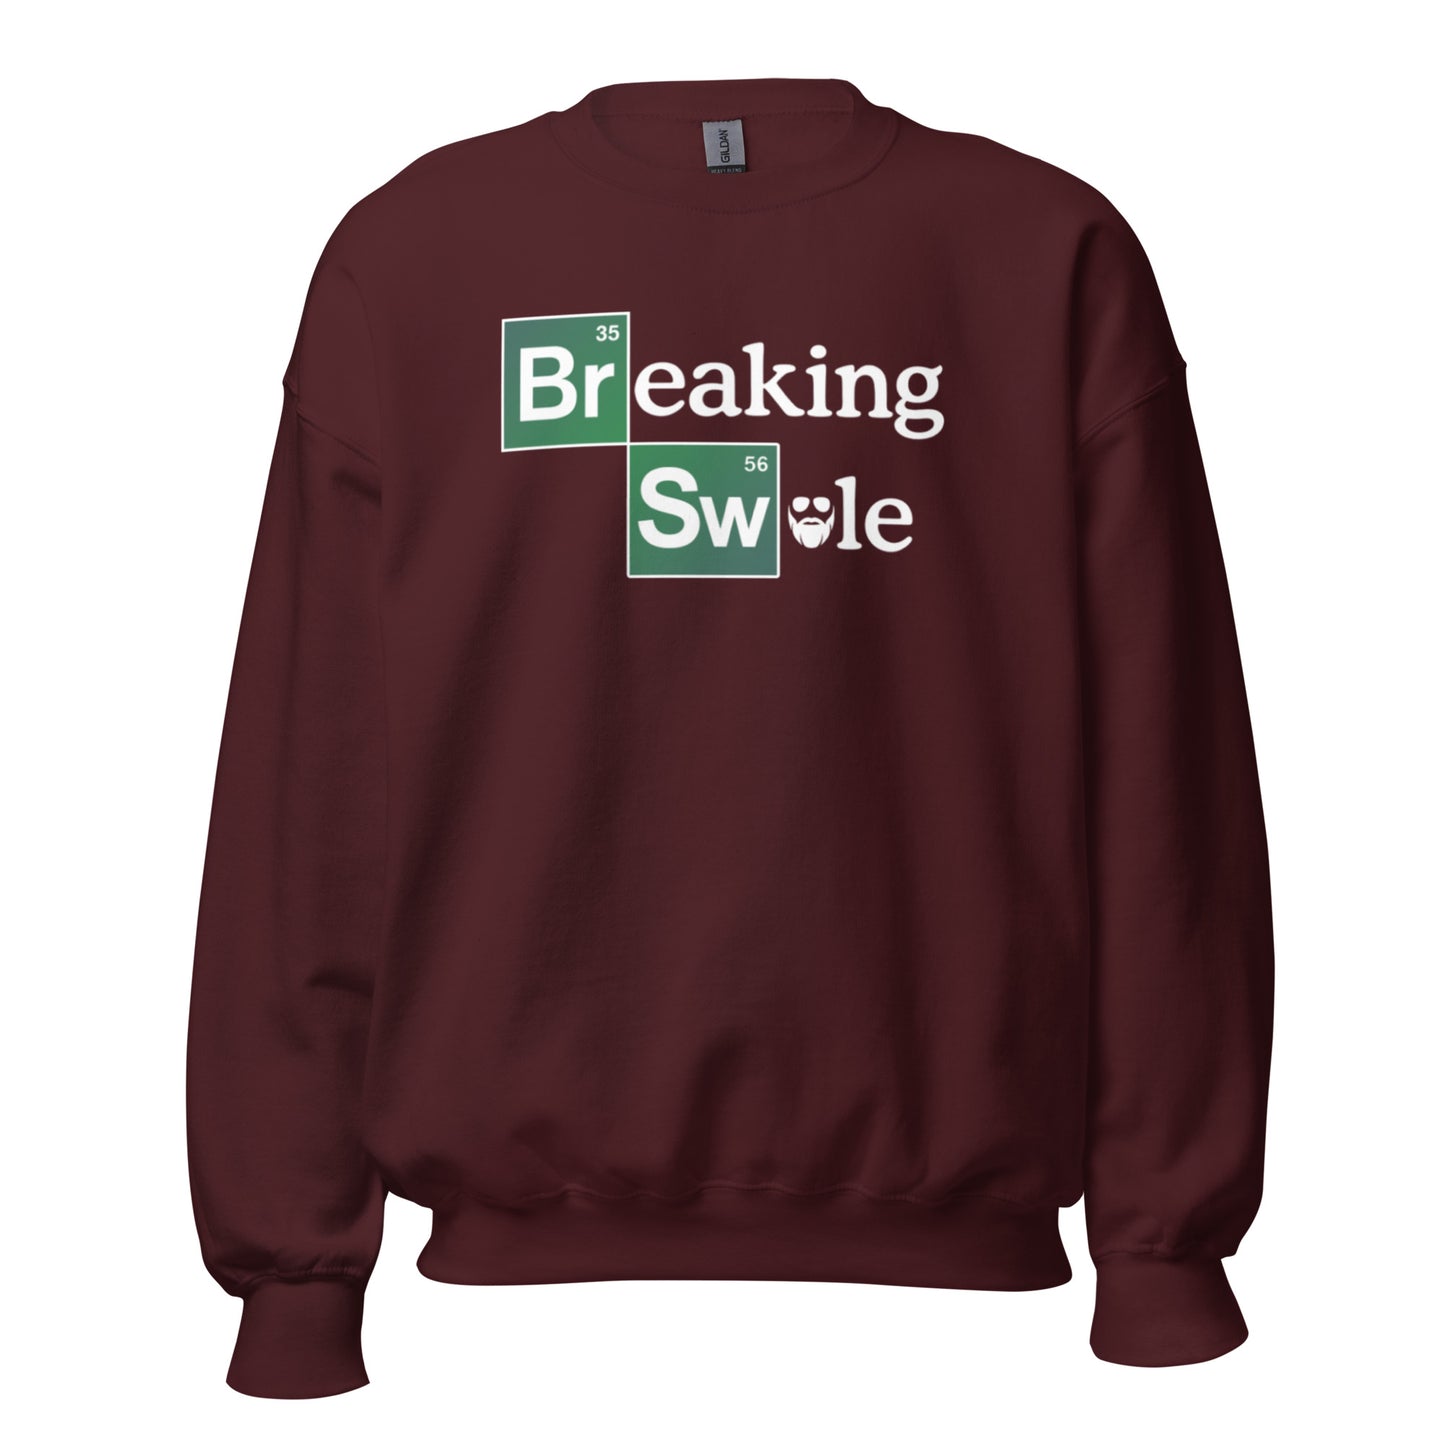 Breaking Swole Sweatshirt